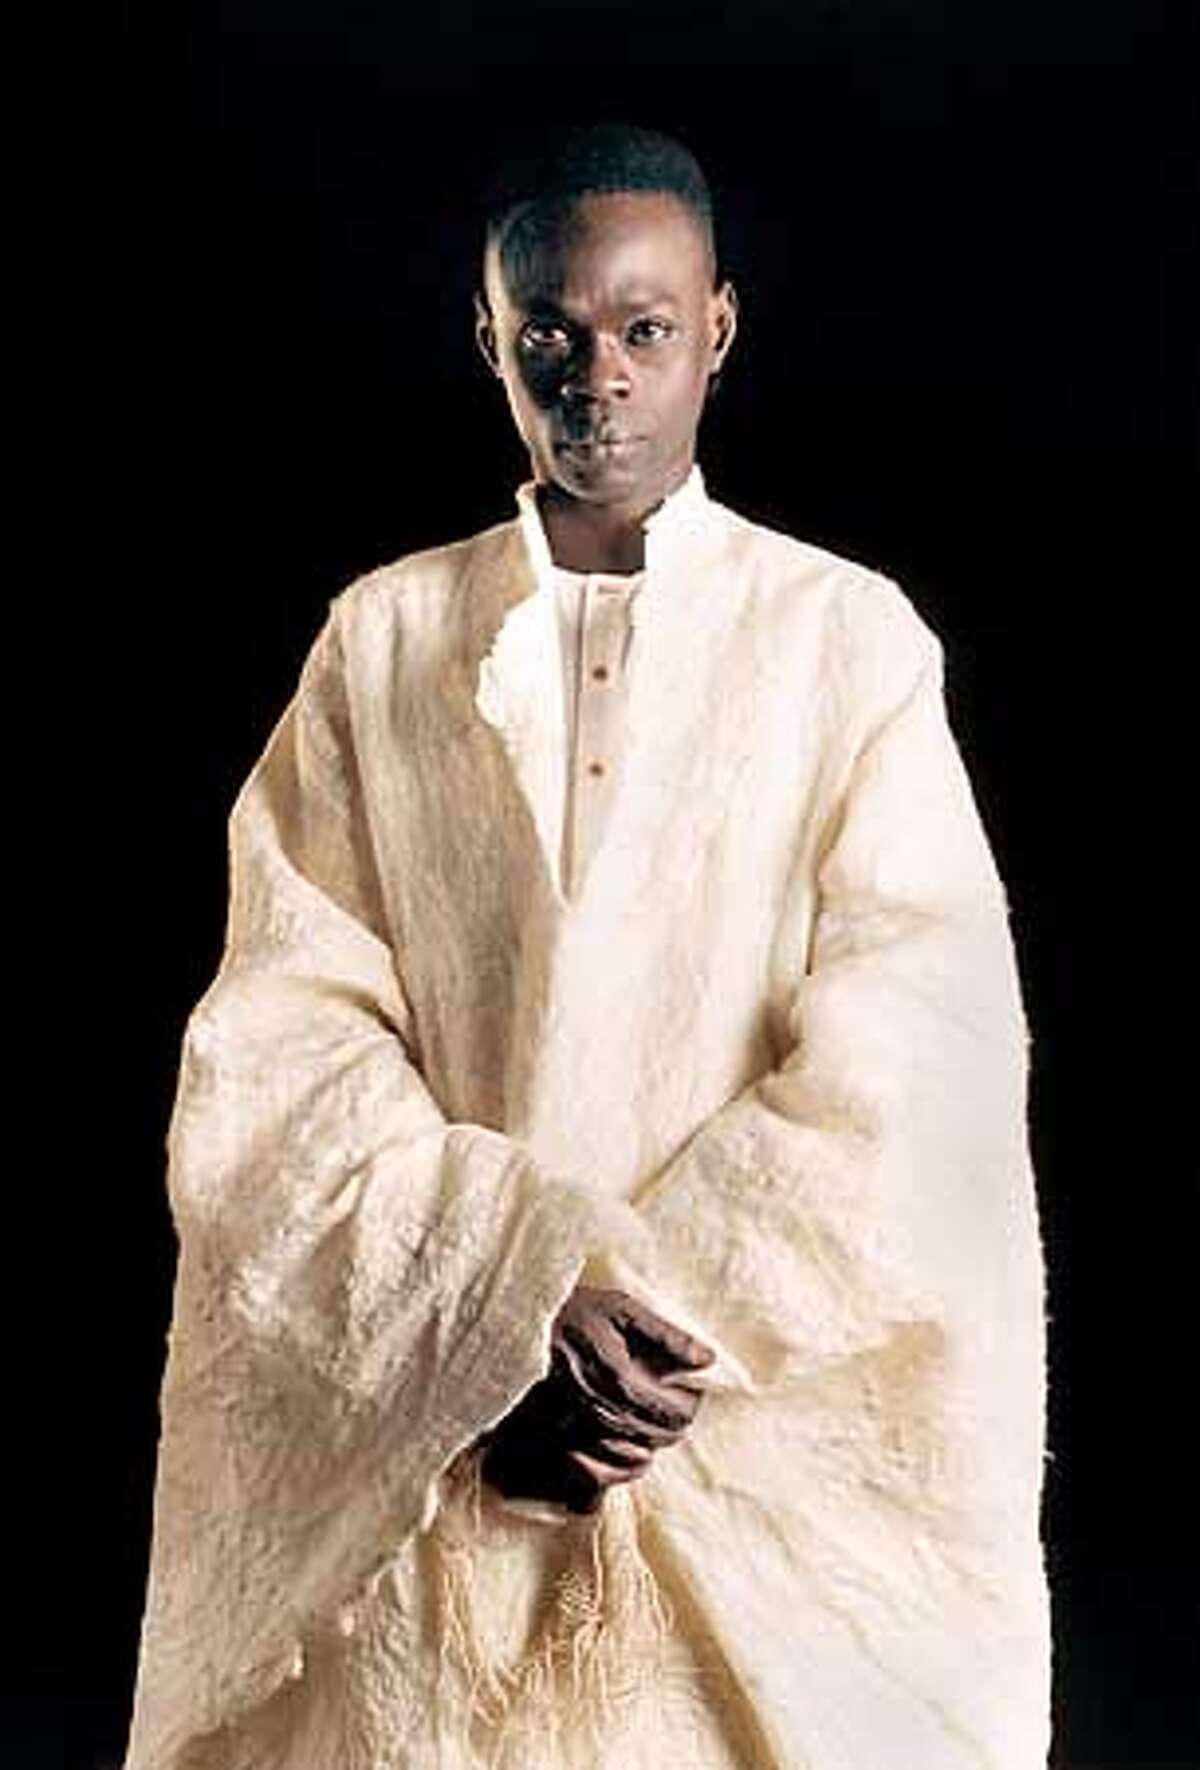 African musician Baaba Maal headlines the Fillmore on Feb. 5. HANDOUT.